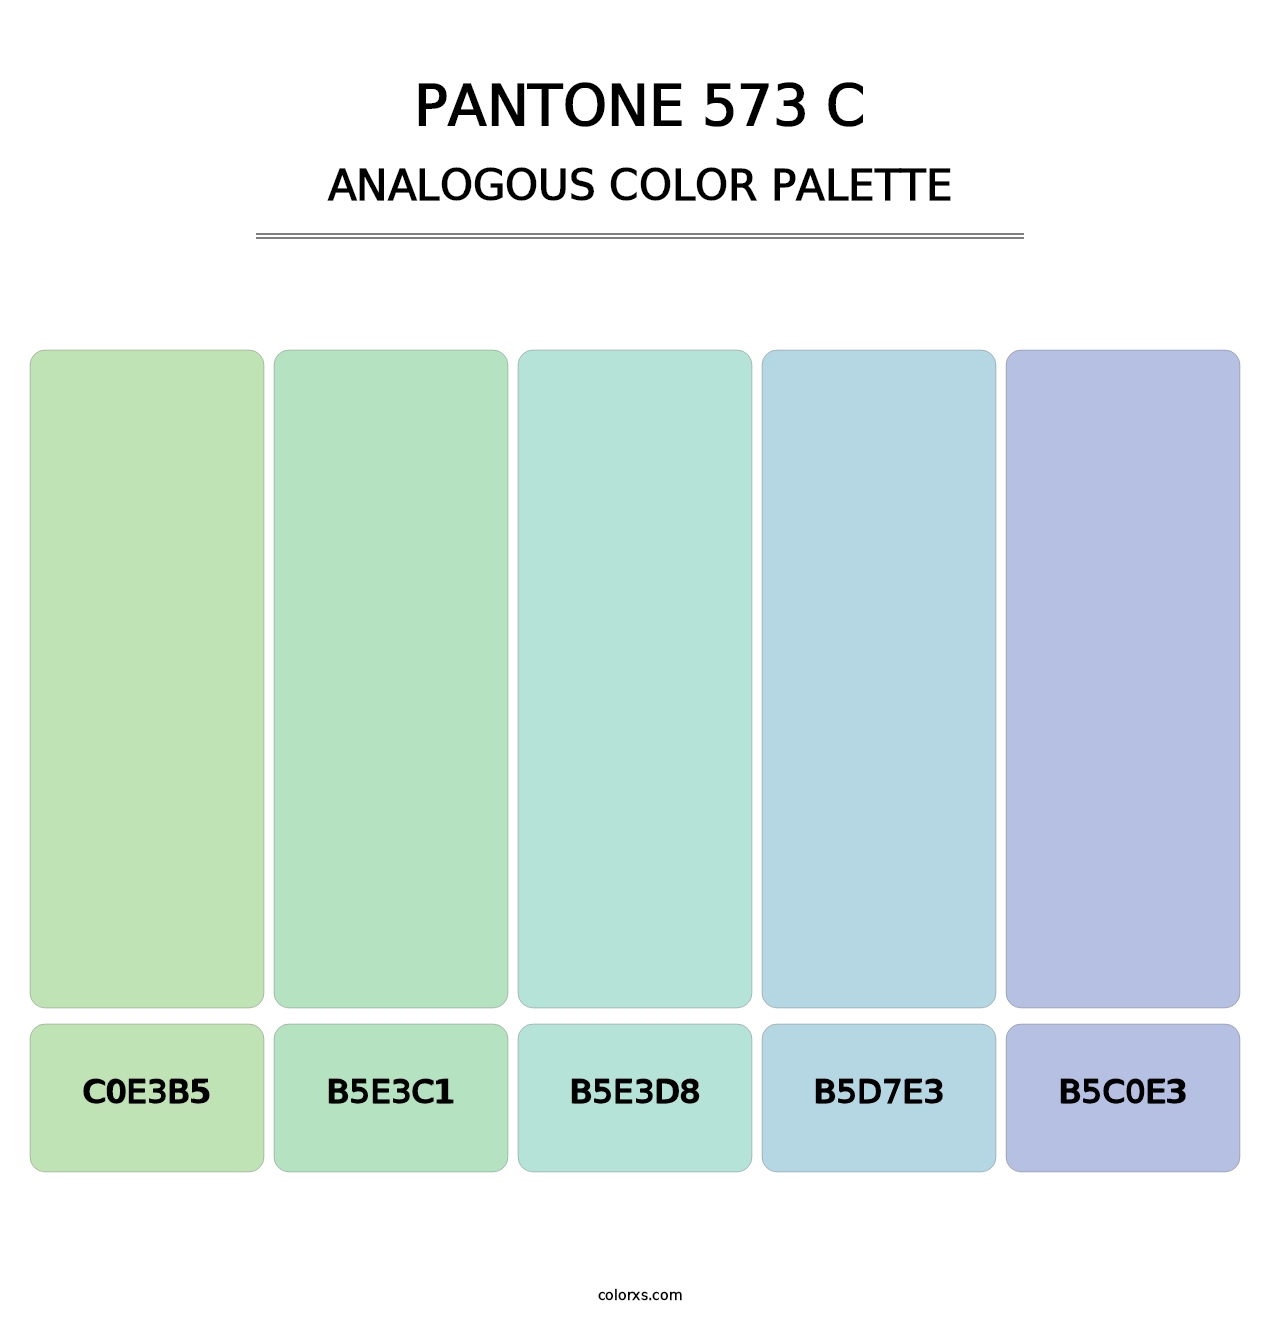 PANTONE 573 C - Analogous Color Palette